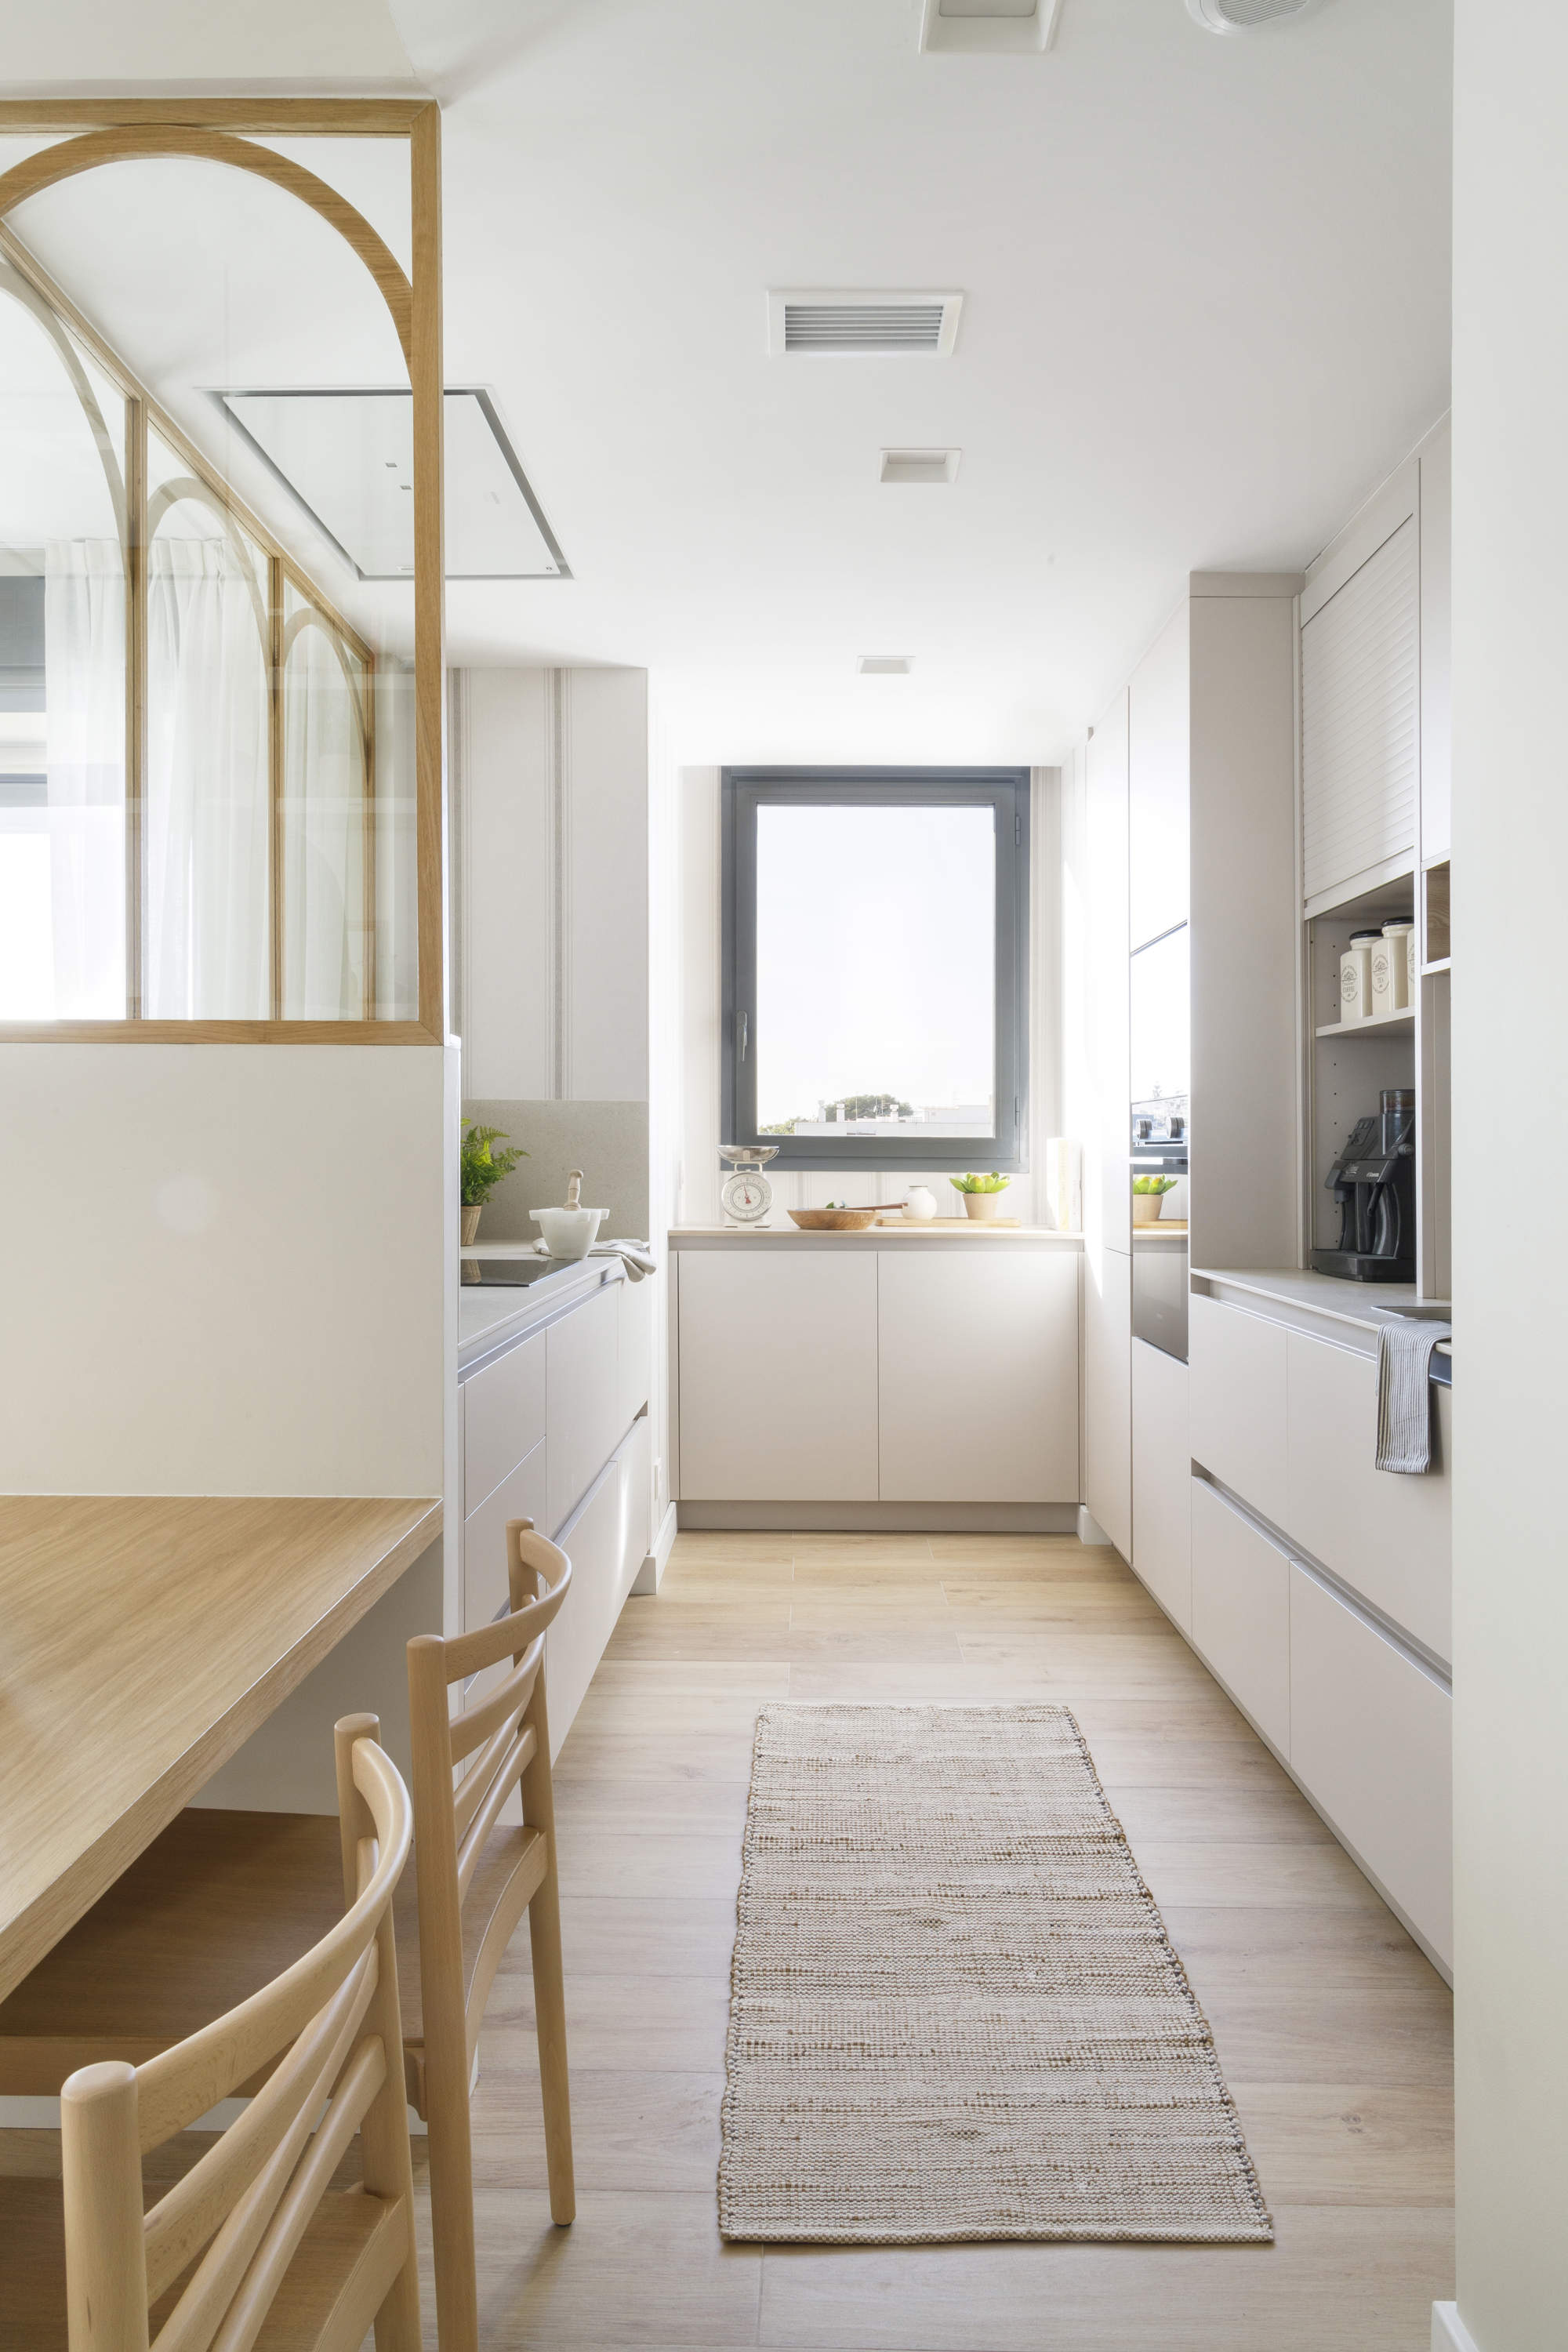 Una cocina estrecha de color blanco con elementos de madera.